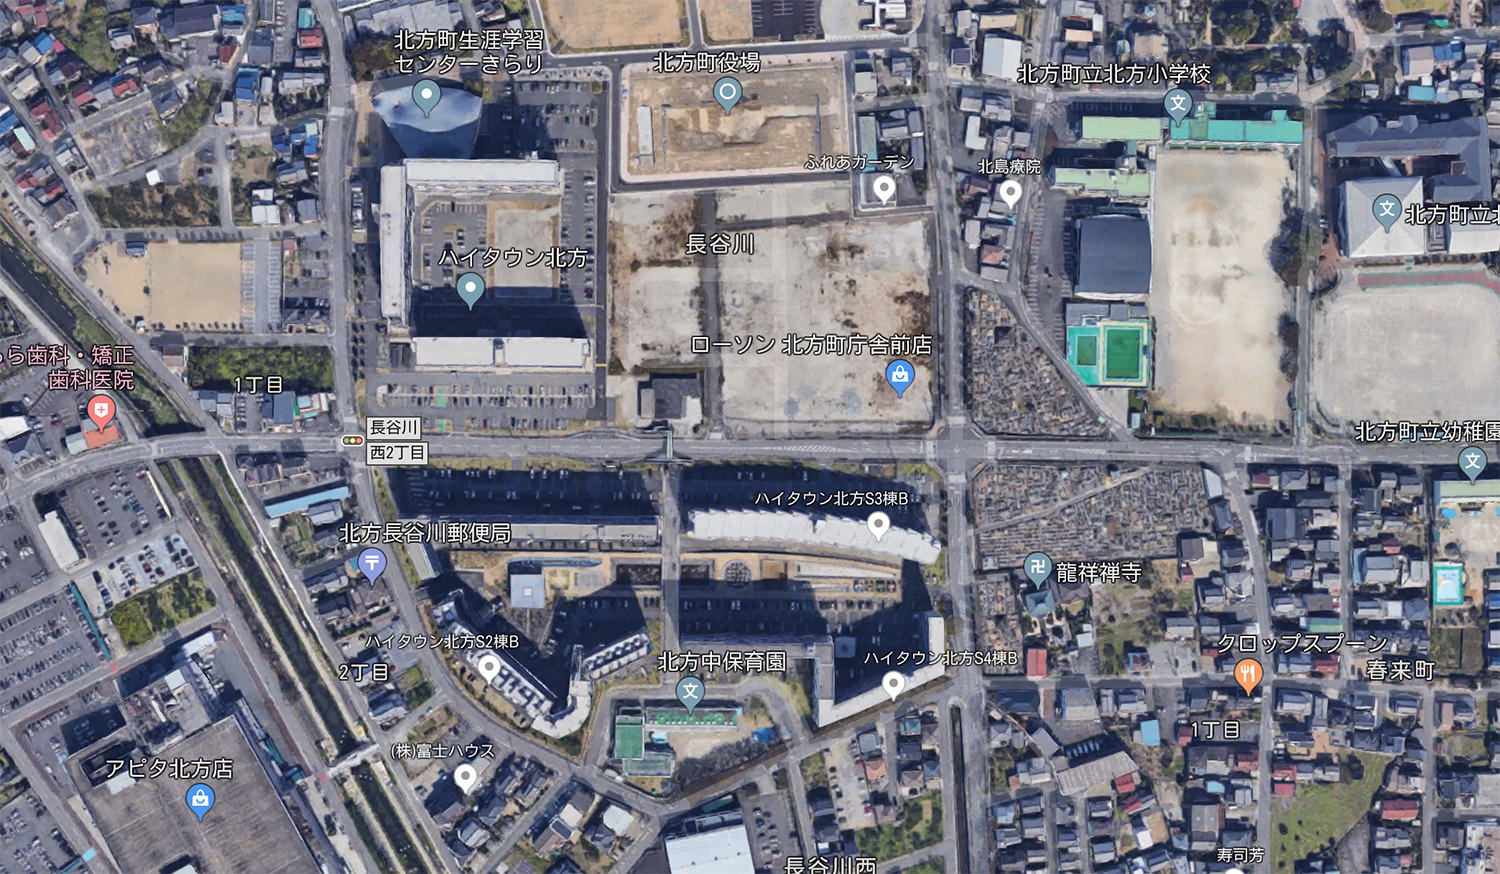 ハイタウン北方の衛星写真